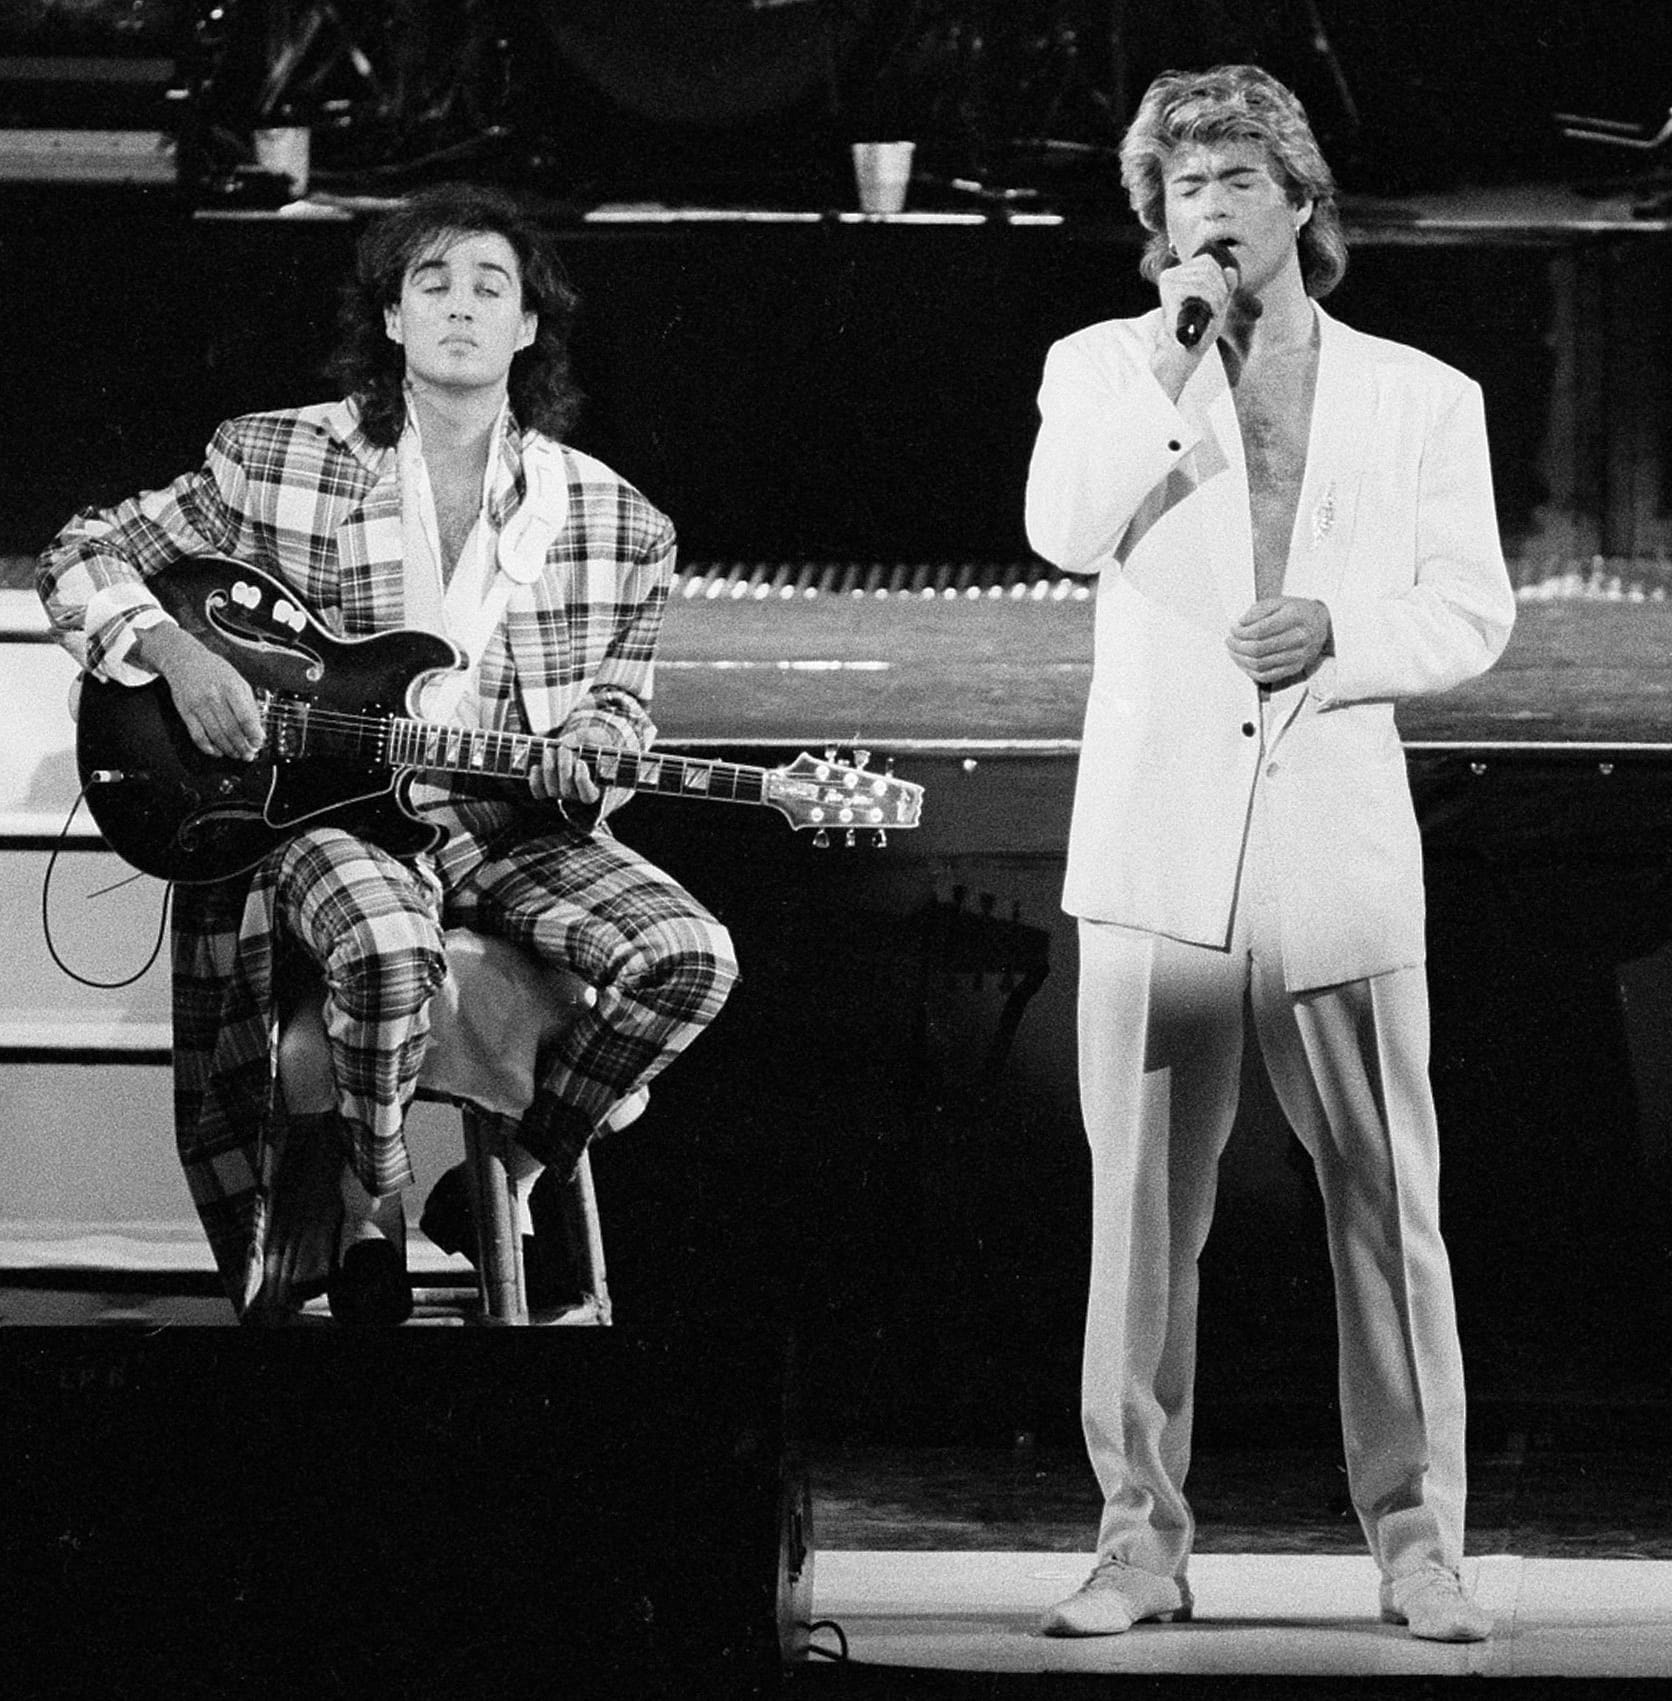 Berühmt wurde Michael als Sänger der britischen Band WHAM!, hier zu sehen mit seinem Gitarristen Andrew Ridgeley am 7. April 1985.